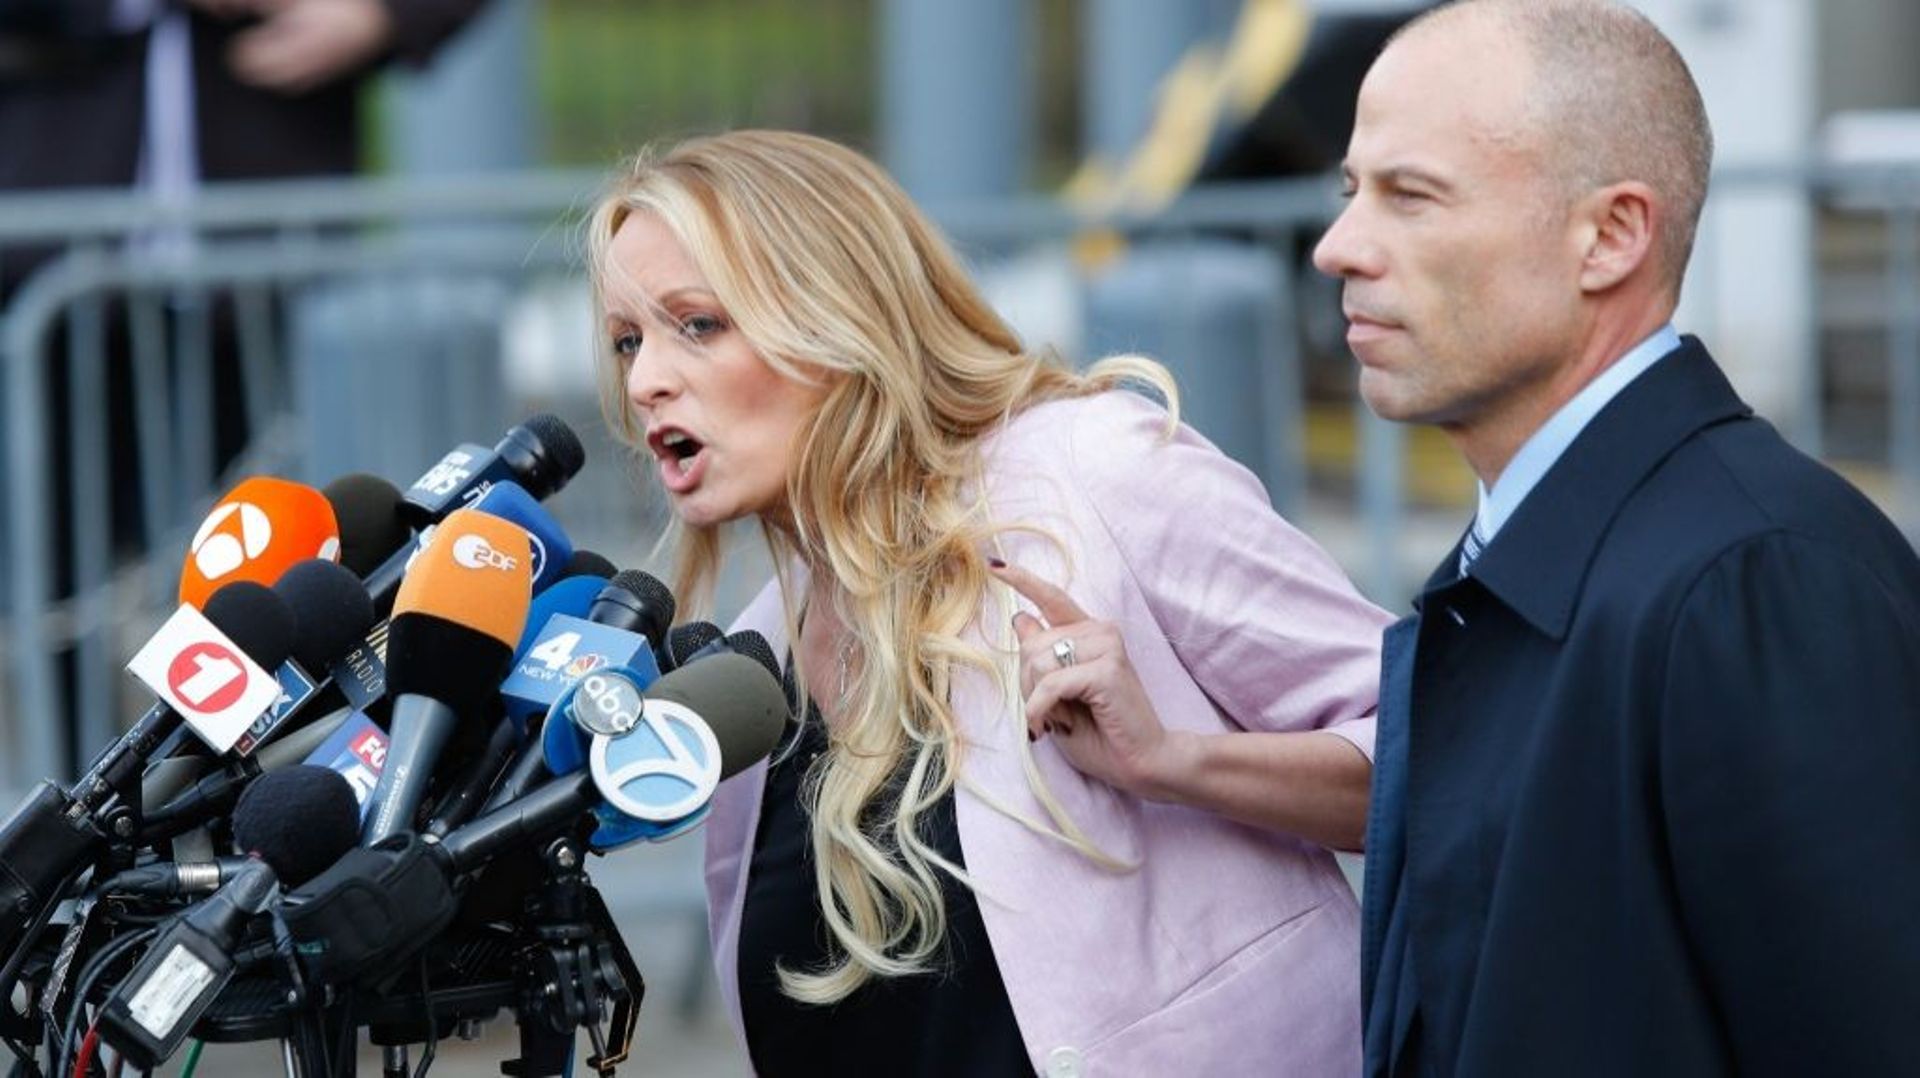 L'actrice de films X Stormy Daniels avec son avocat Michael Avenatti, parlant à la presse devant le tribunal newyorkais où elle a déposé sa plainte, en avril 2018